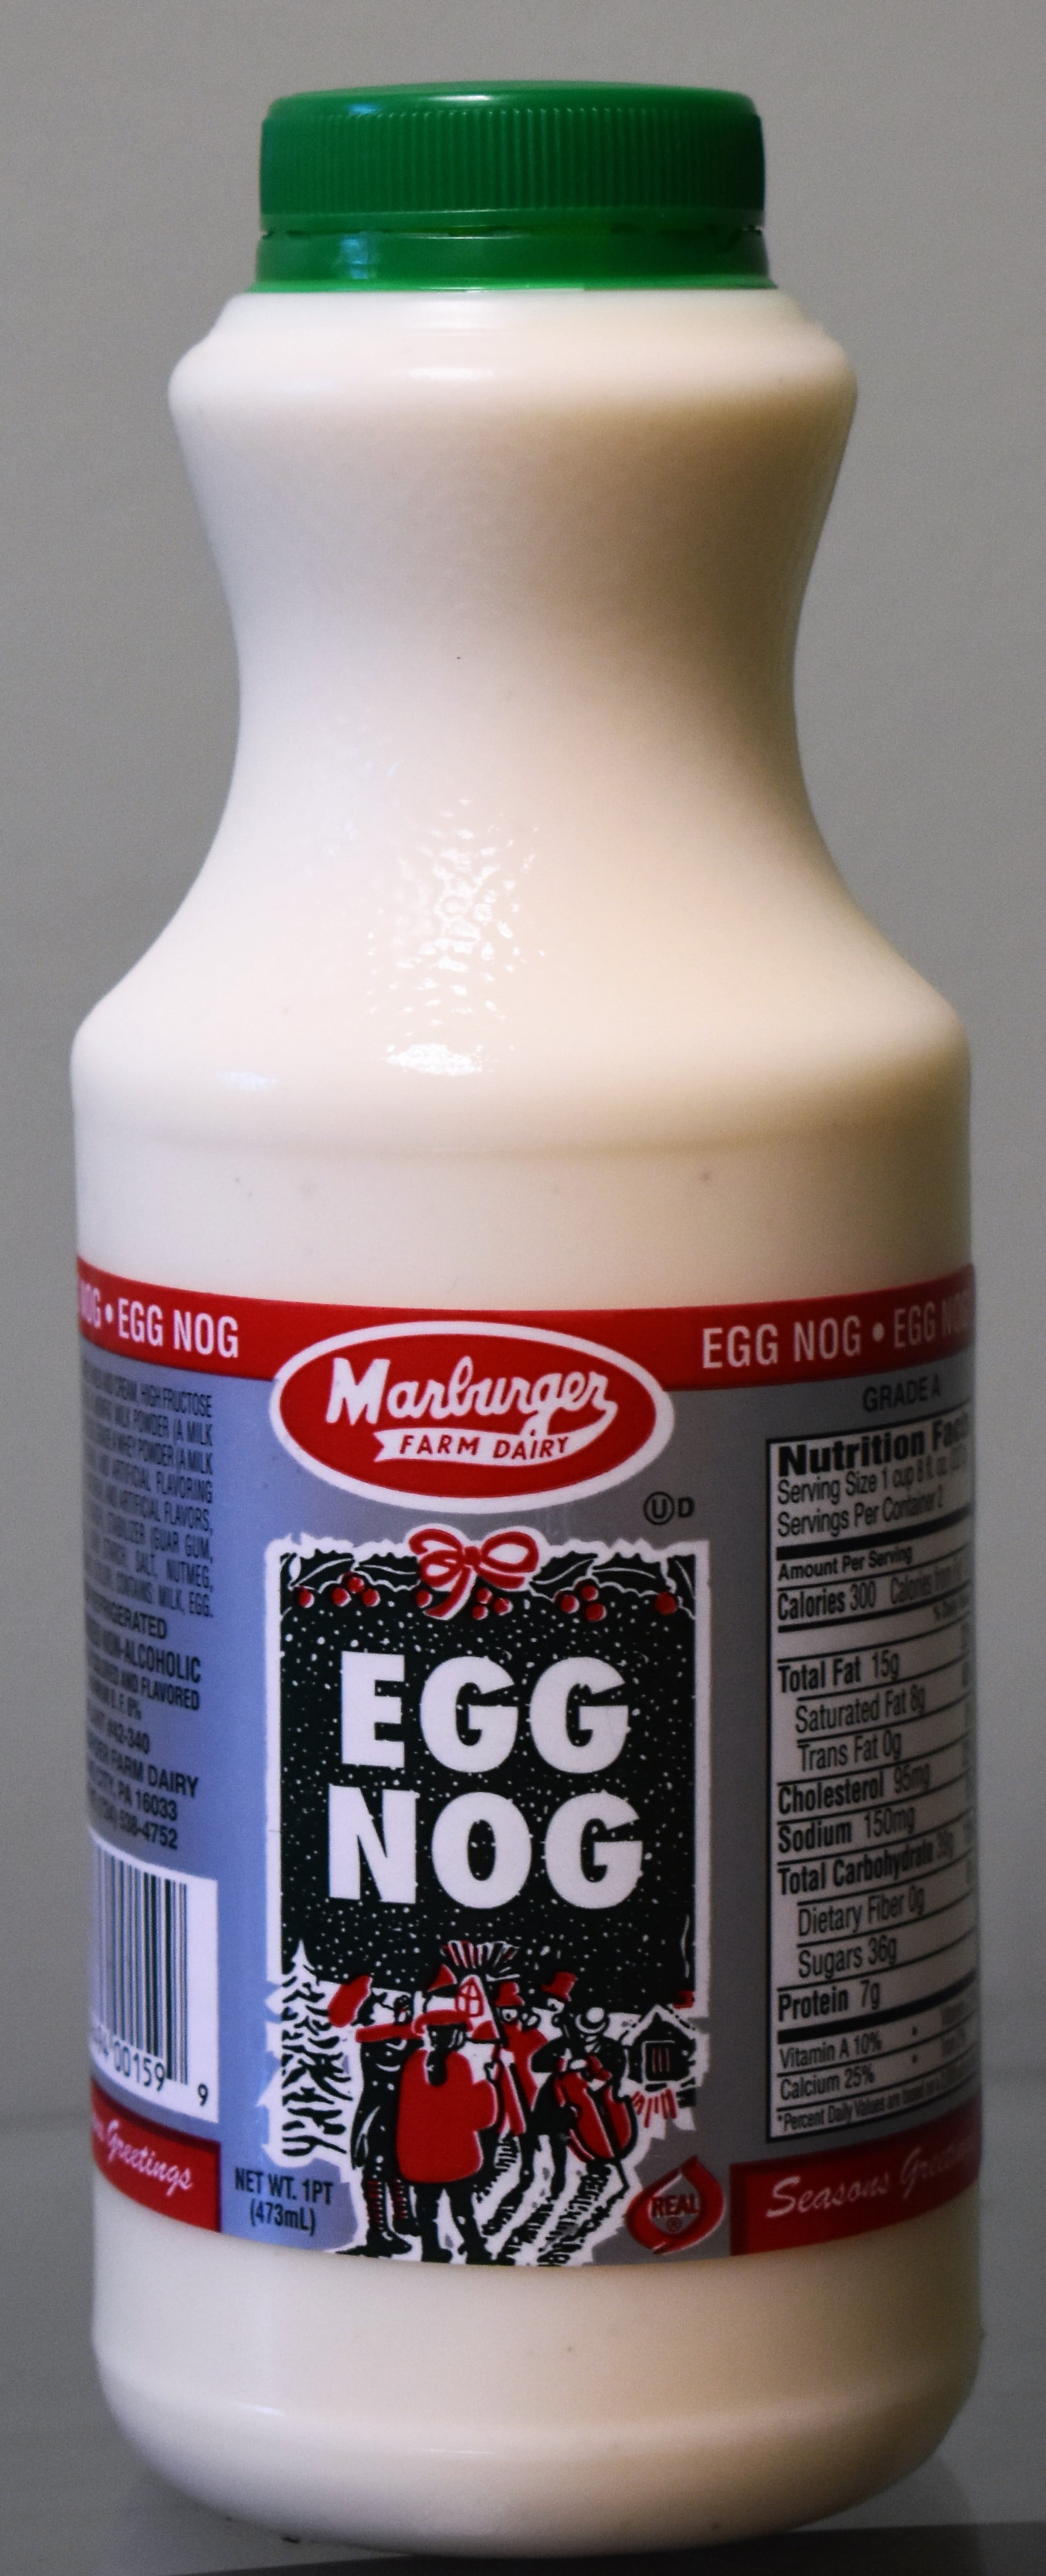 Marburger Farm Dairy Egg Nog, 1 Pint - Walmart.com ...